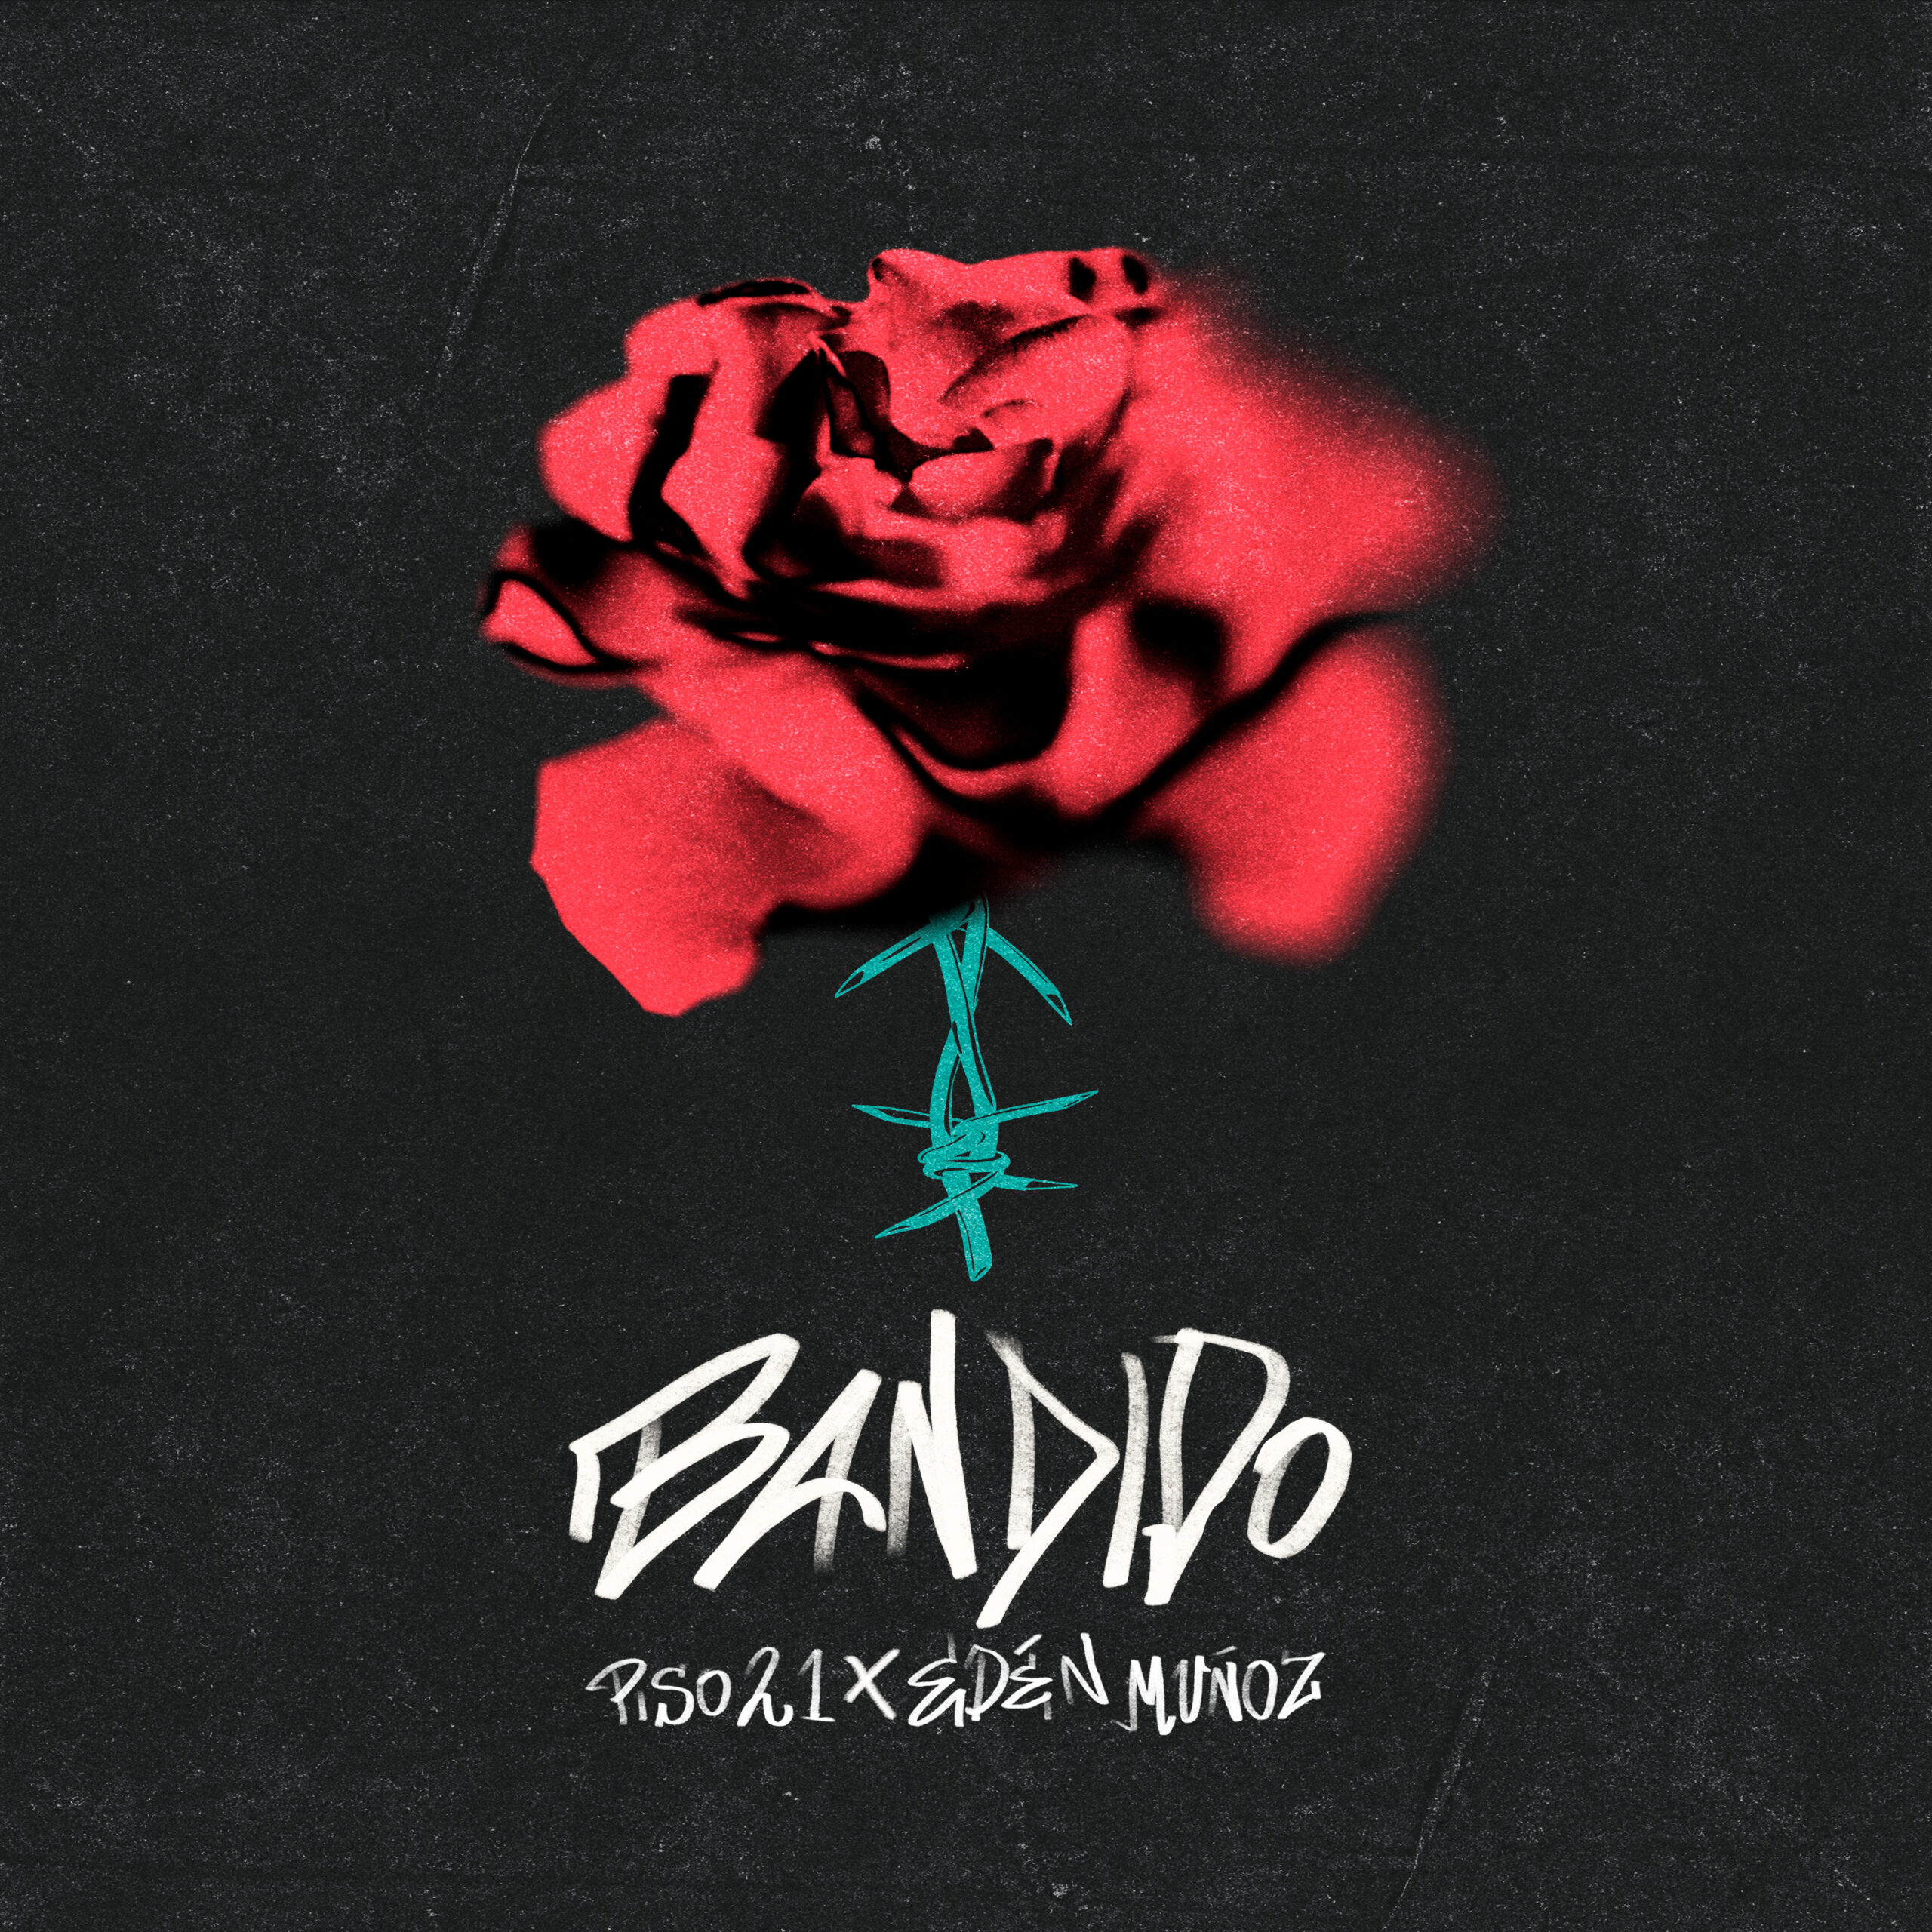 PISO 21 y EDEN MUÑOZ lanzan tema “Bandido”